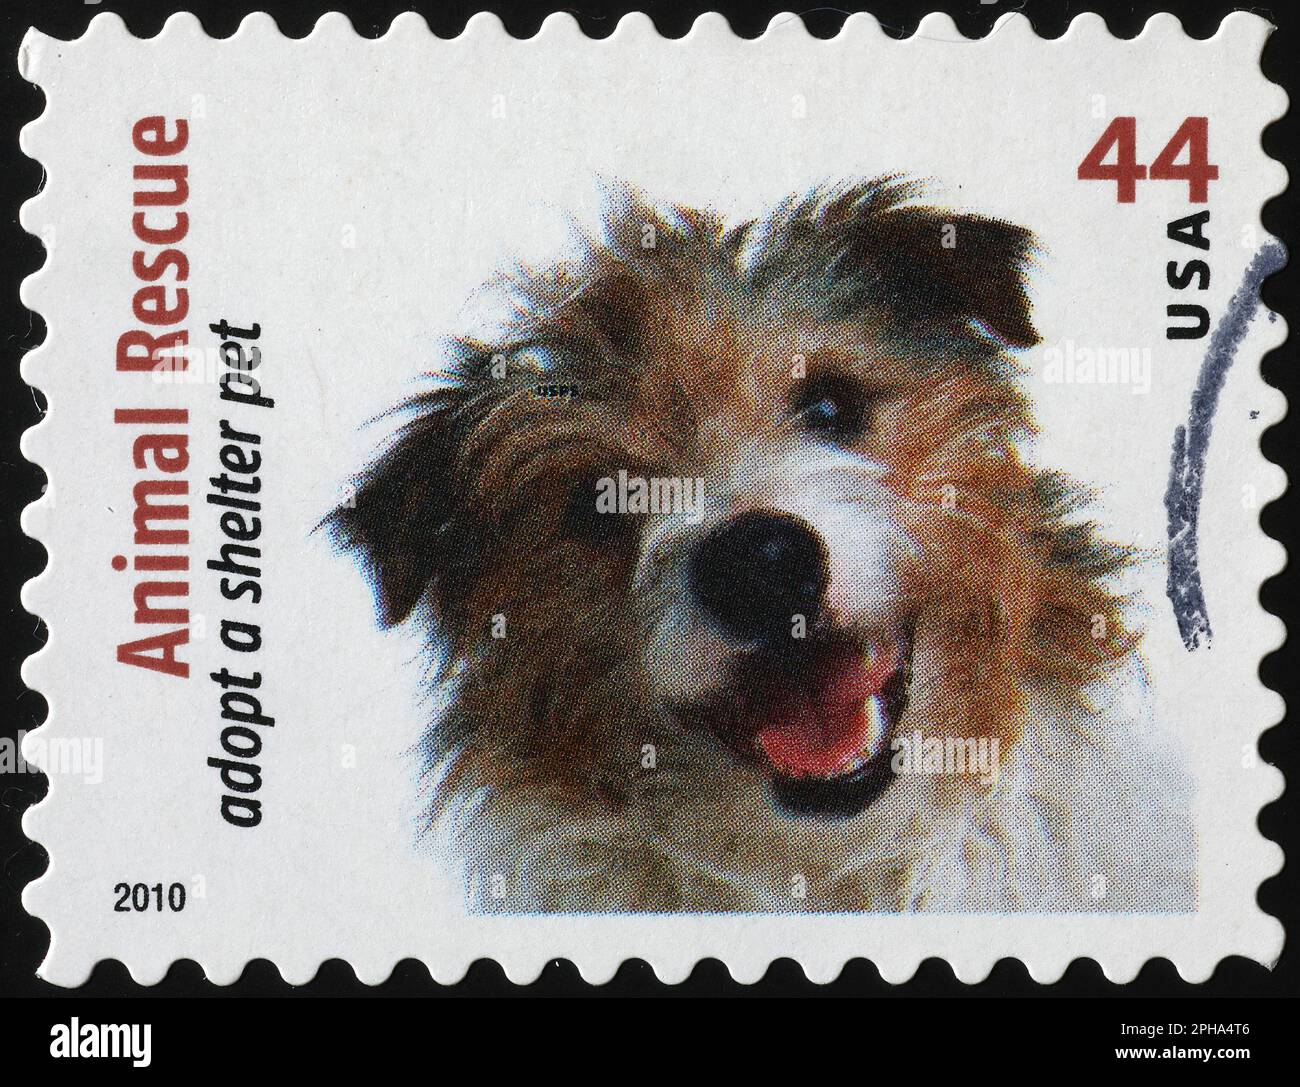 Komischer Hund, der dich auf der Briefmarke ansieht Stockfoto